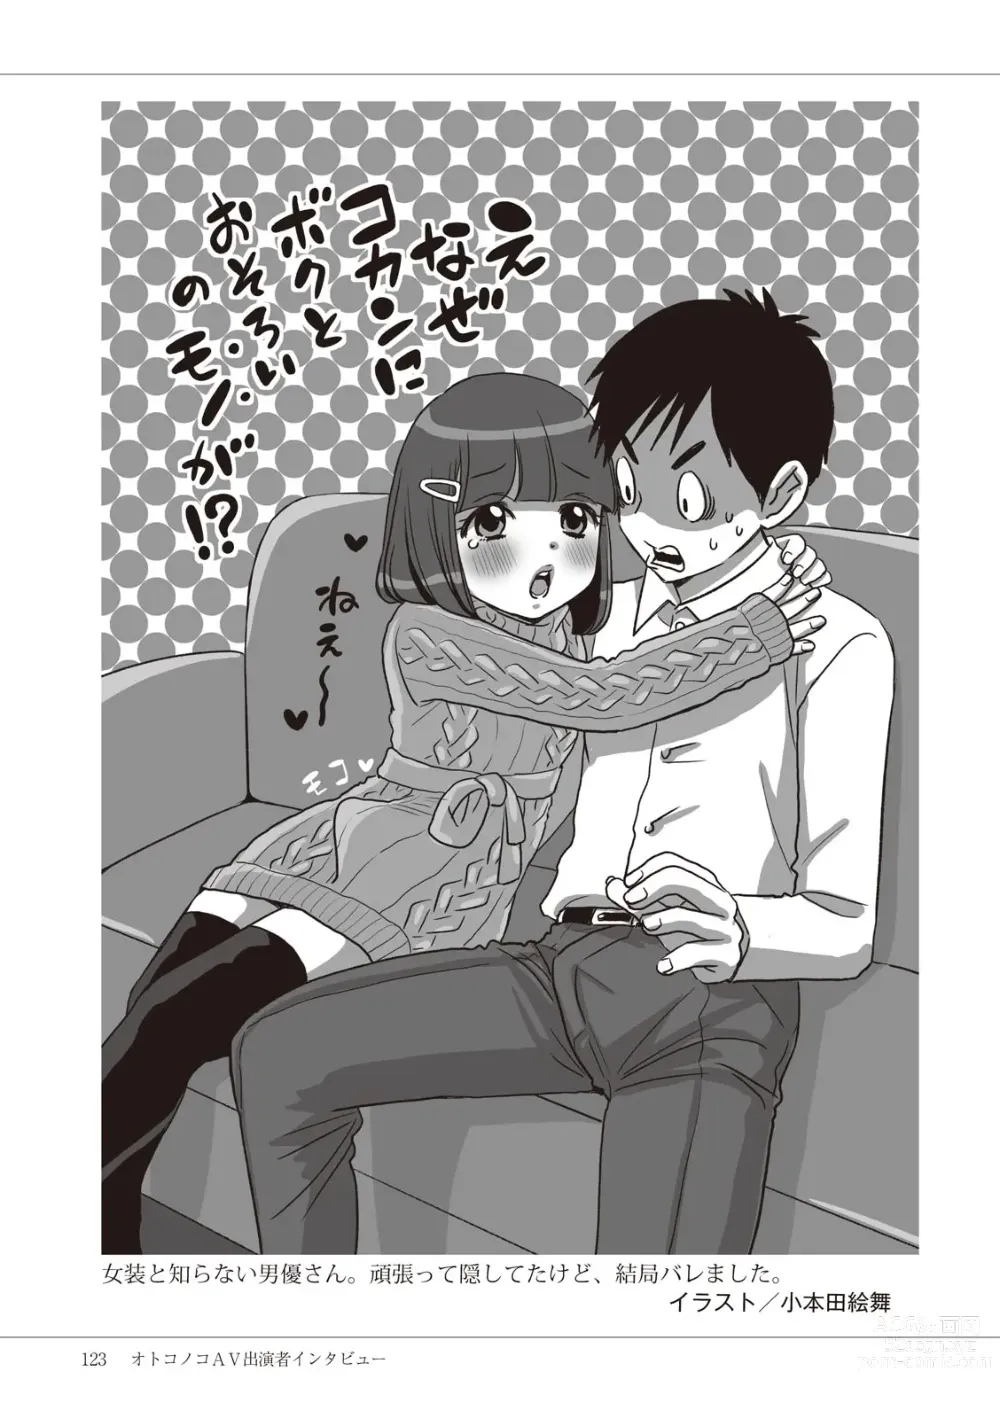 Page 125 of manga Manga de Furikaeru Otokonoko 10-nenshi